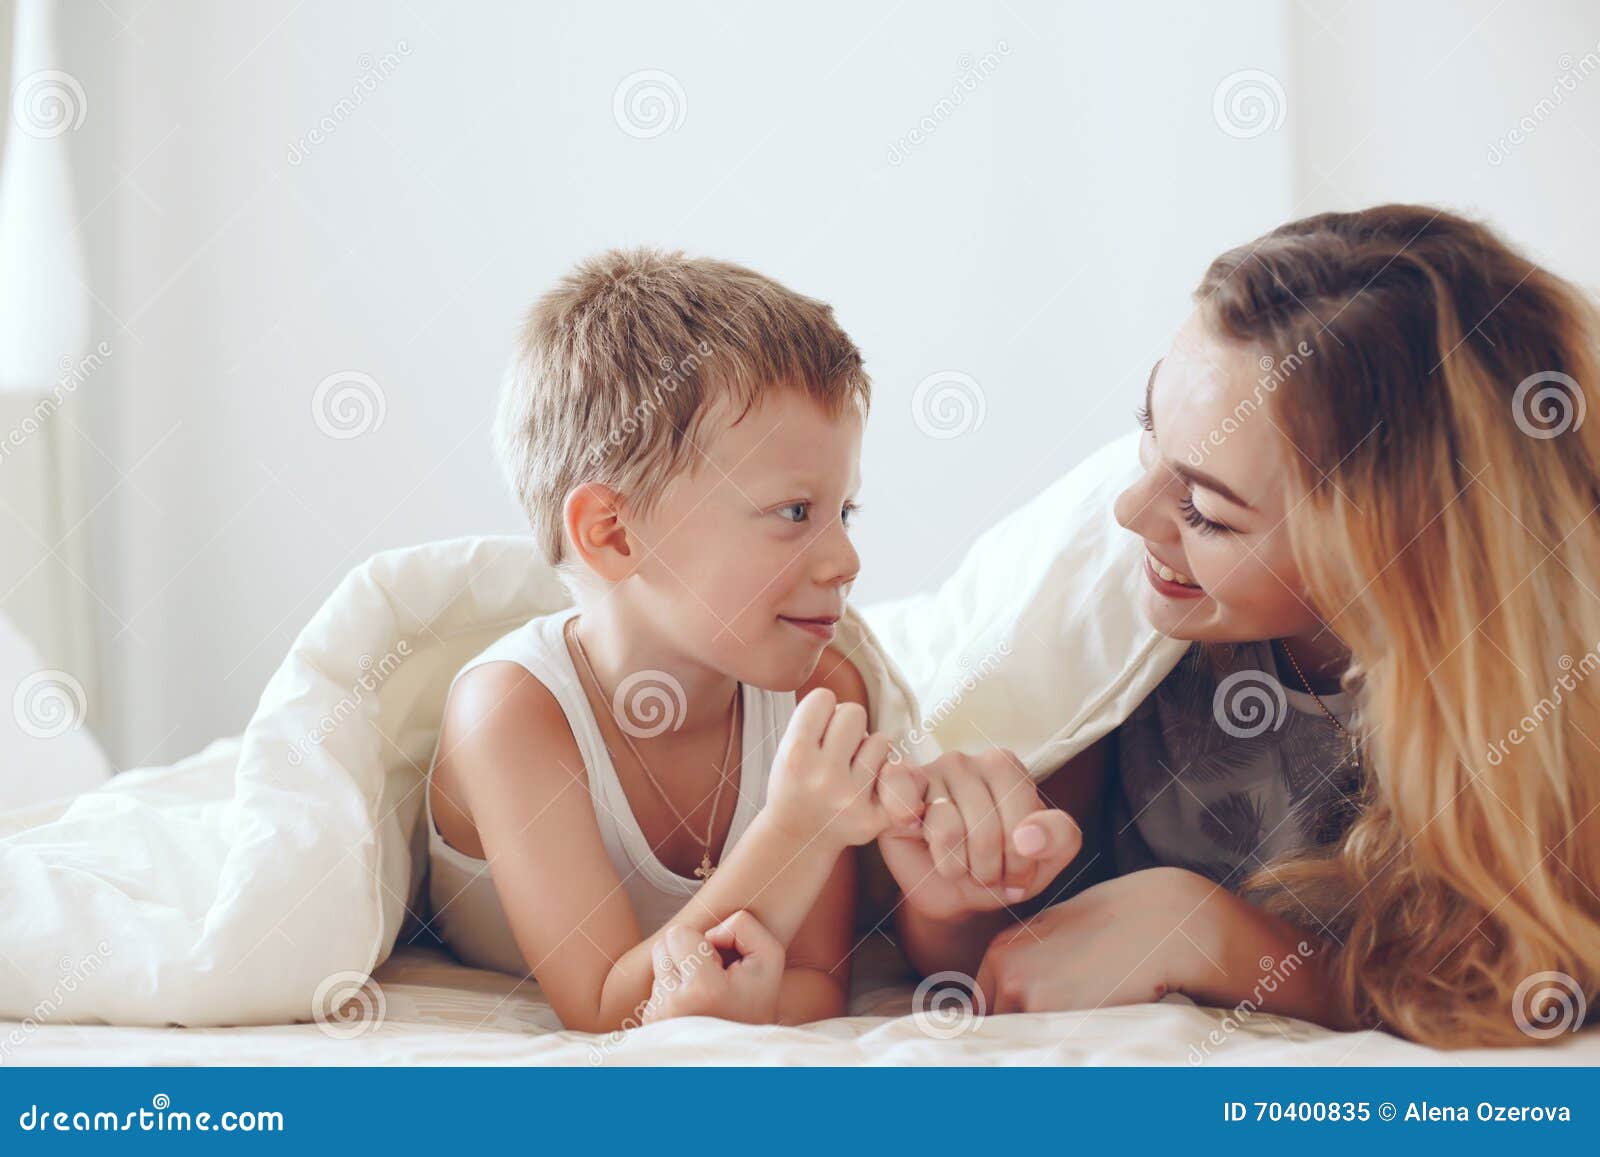 Большая тетя с мальчиком. Мальчик с мамой в постели. Мама с сыном играют в кровати. Мама с юным сыном в постели. Мама затащила сына в кровать.